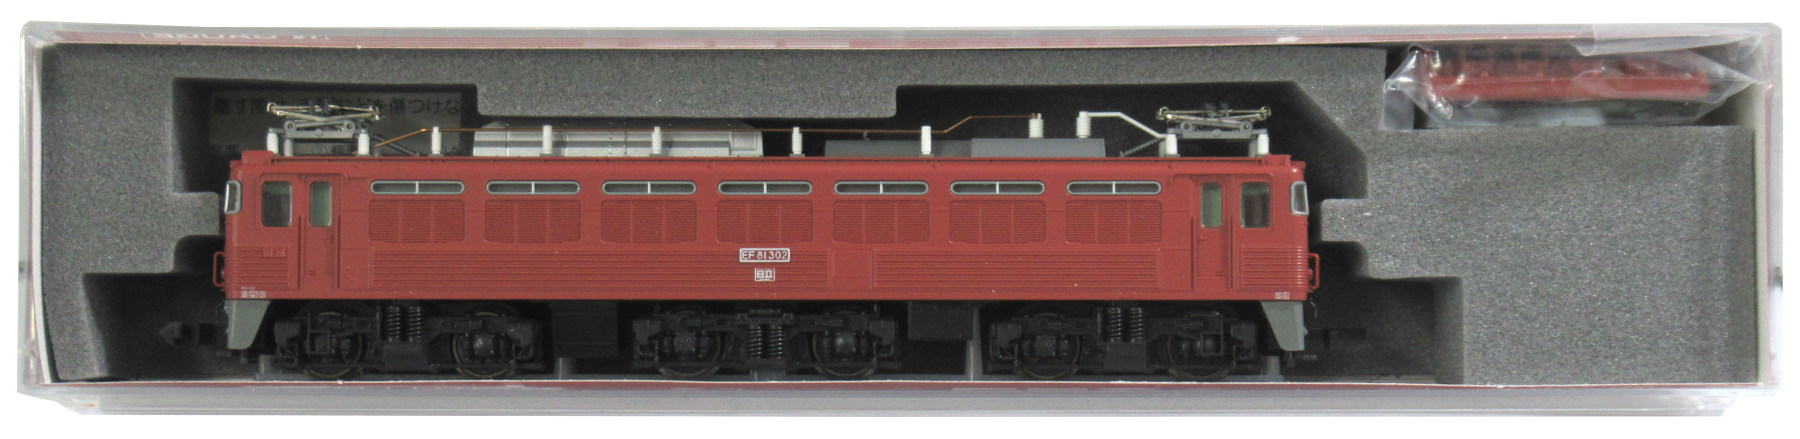 公式]鉄道模型(3067-2EF81 300 ローズピンク 塗装タイプ)商品詳細 